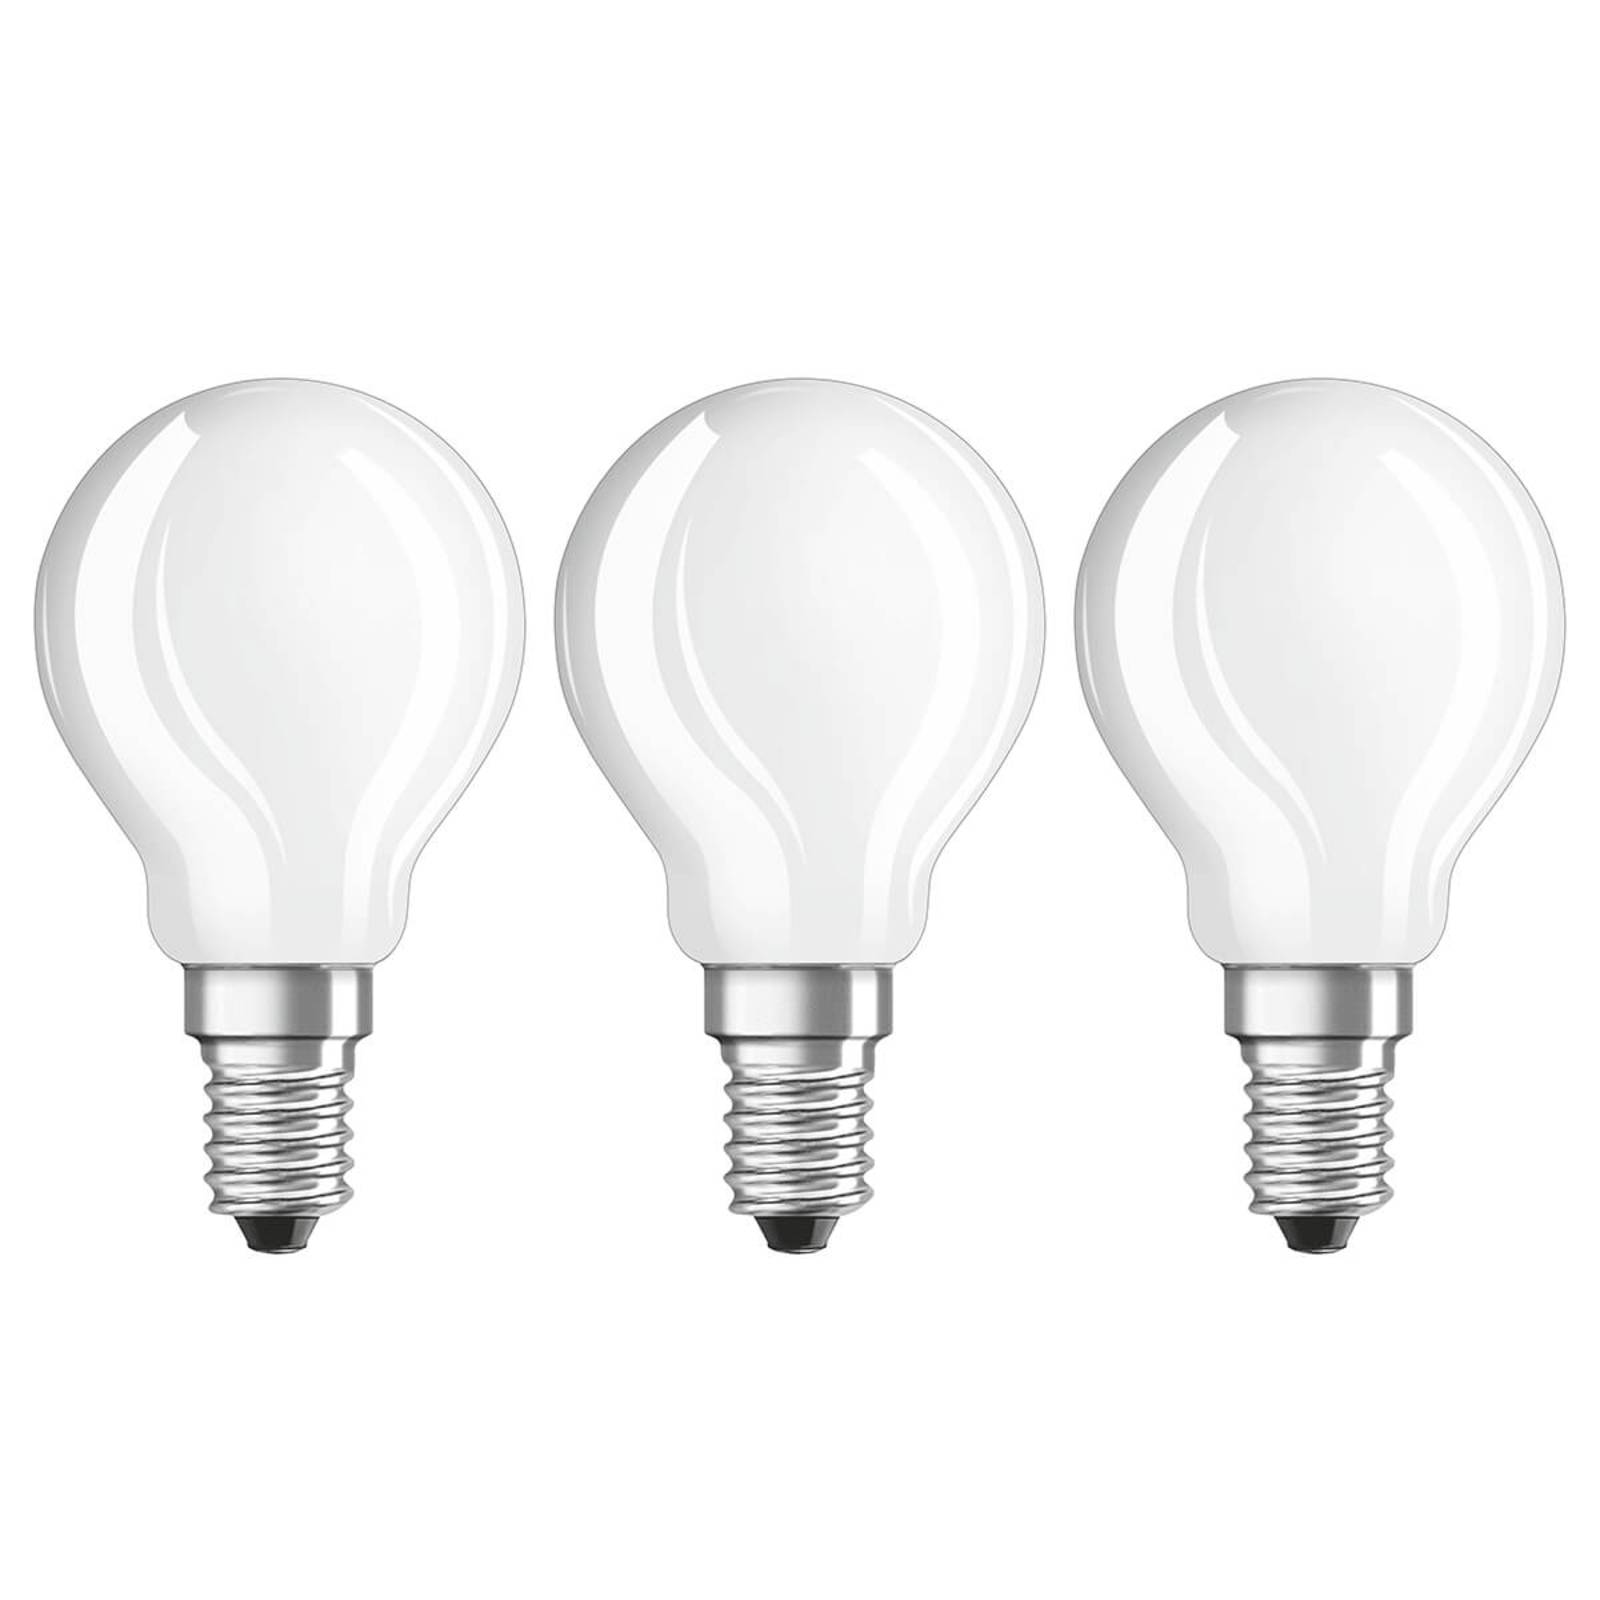 Ampoule LED E14 4 W, blanc chaud, 470 lm, kit de 3